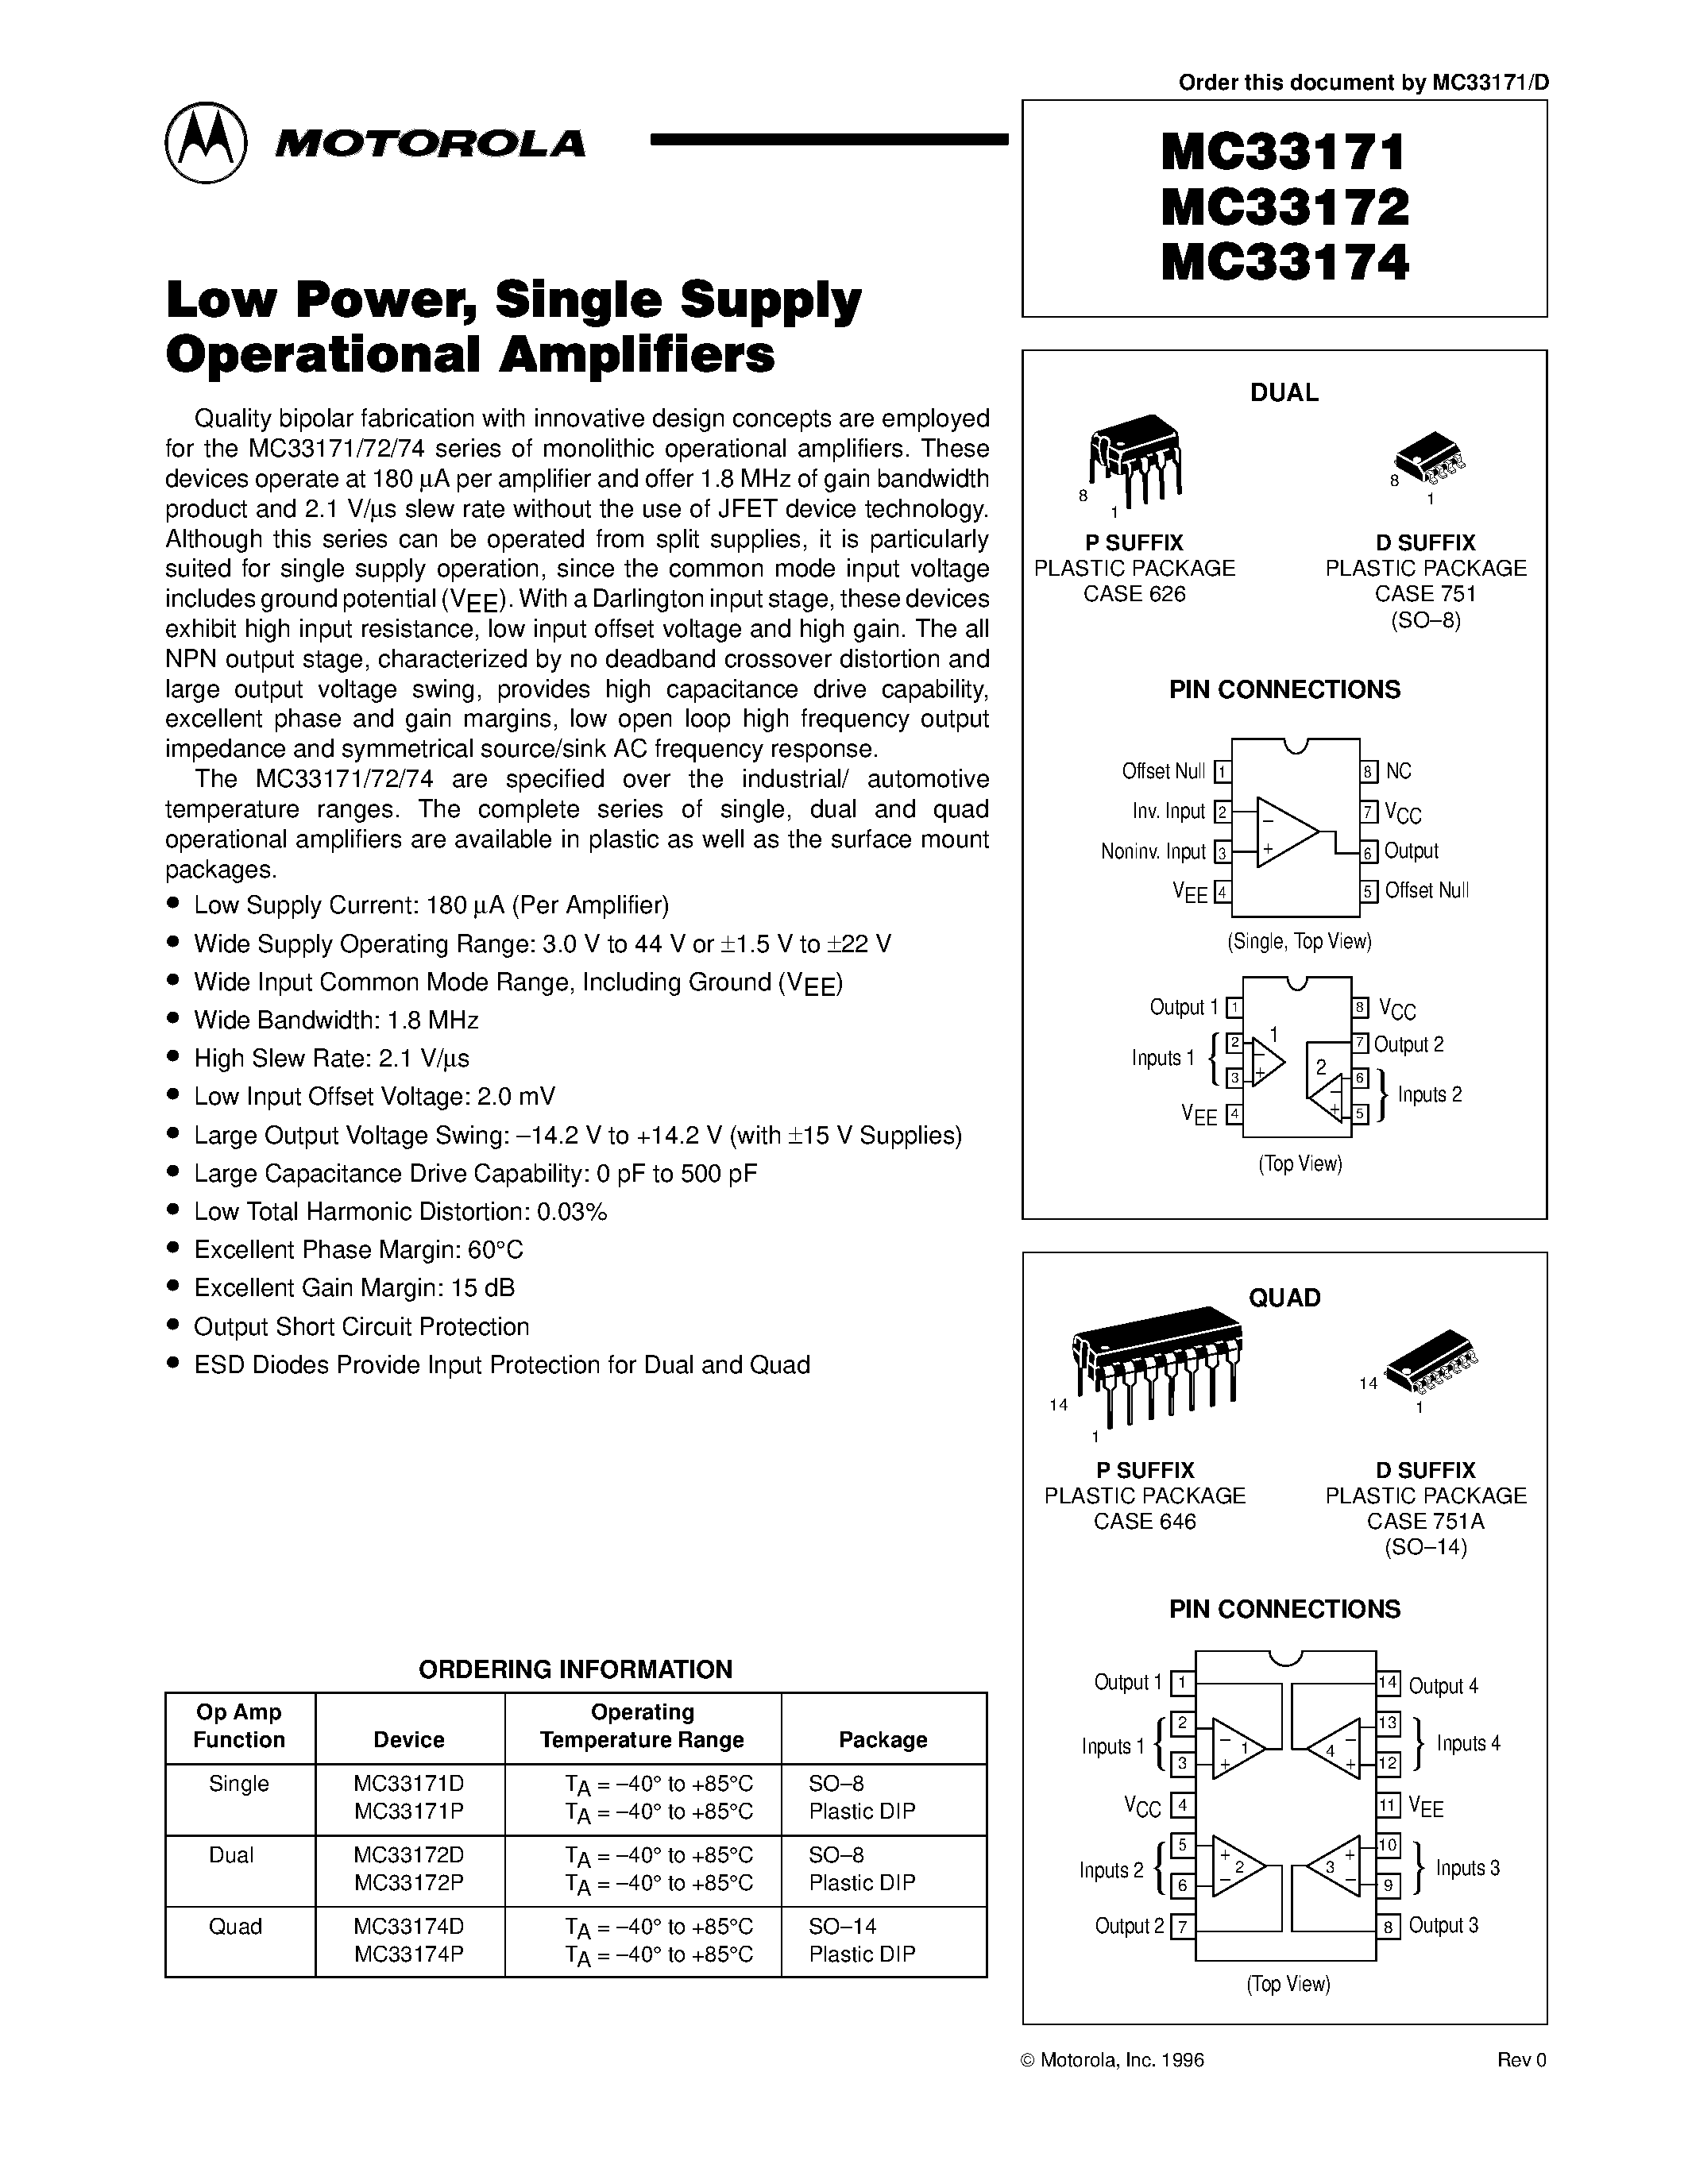 Datasheet MC33171 - (MC33172/MC33174) Low Power / Single Supply Operational Amplifiers page 1